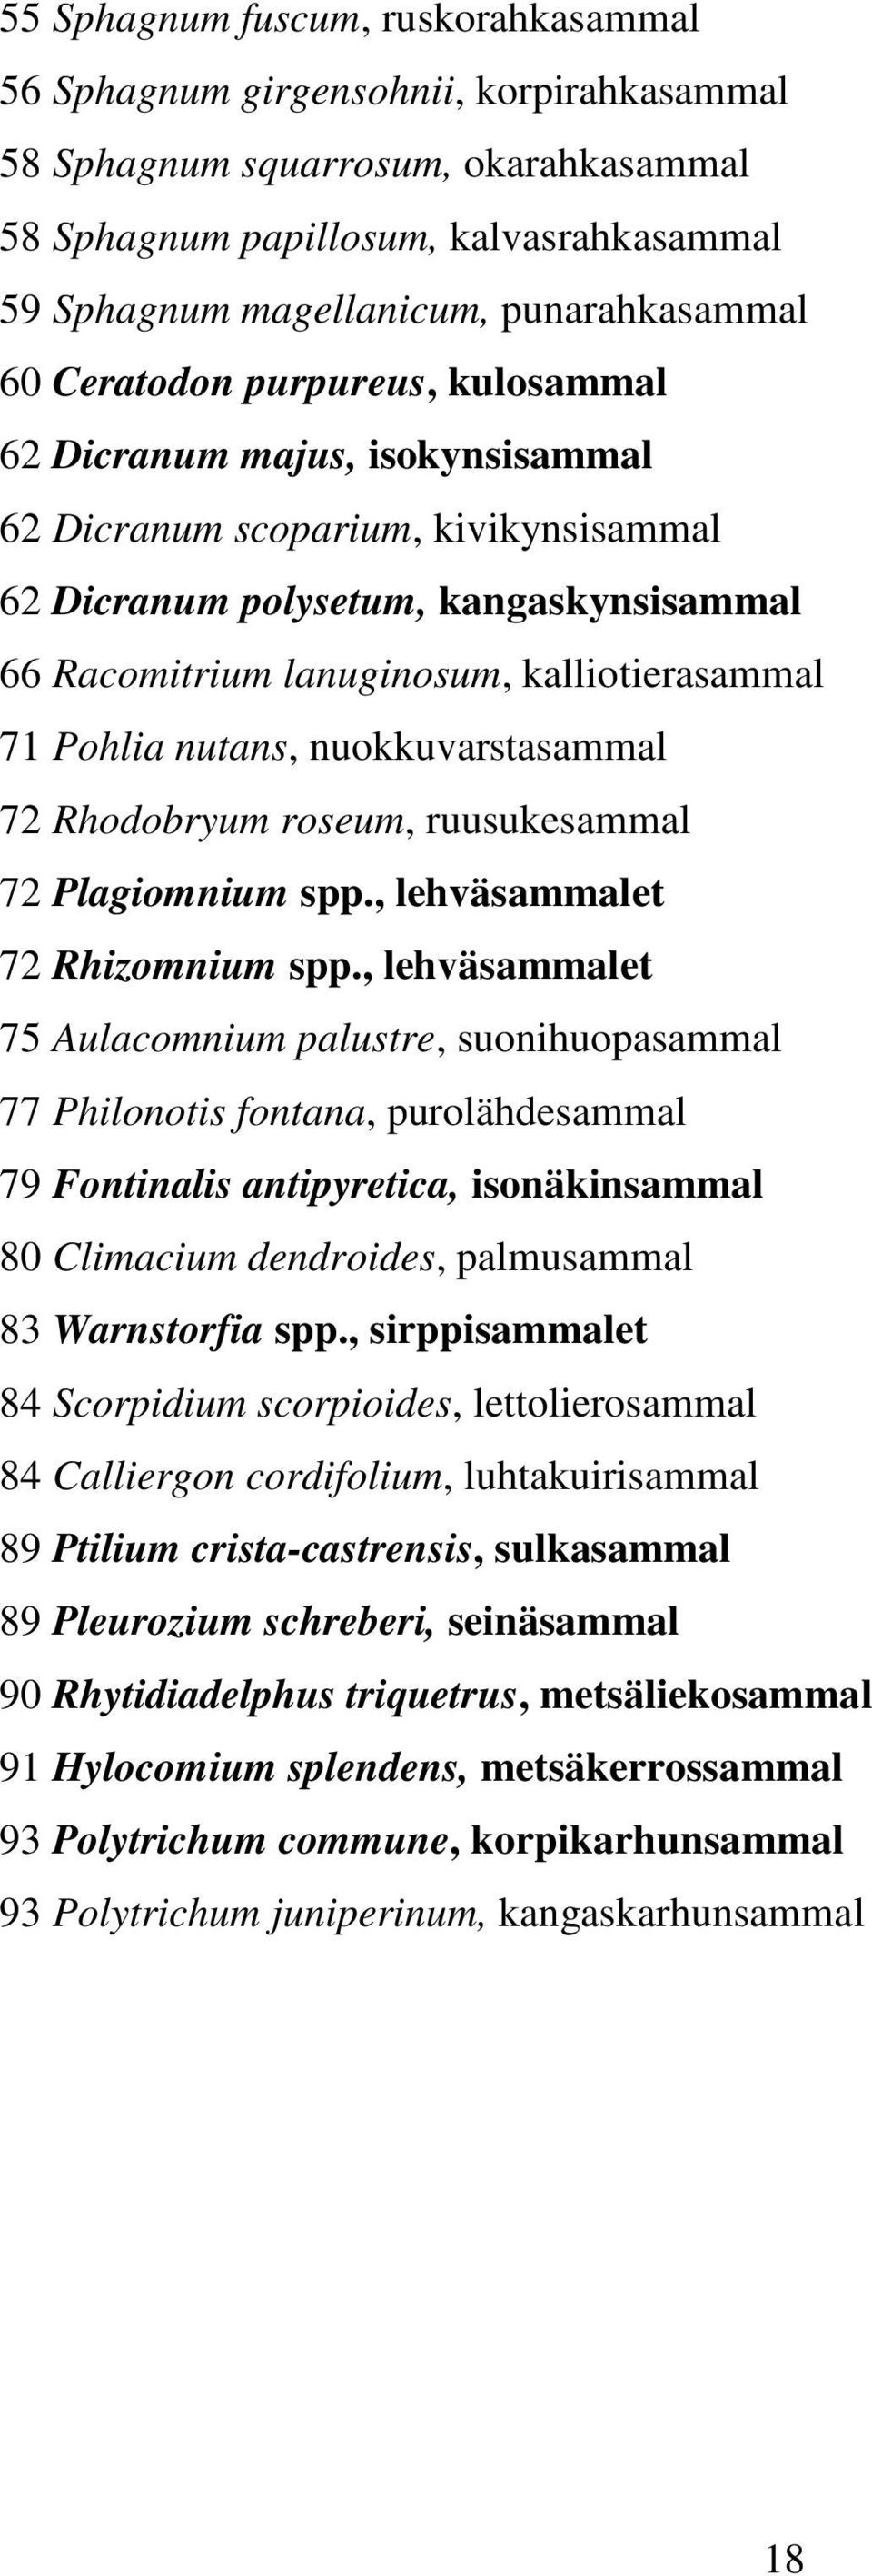 kalliotierasammal 71 Pohlia nutans, nuokkuvarstasammal 72 Rhodobryum roseum, ruusukesammal 72 Plagiomnium spp., lehväsammalet 72 Rhizomnium spp.